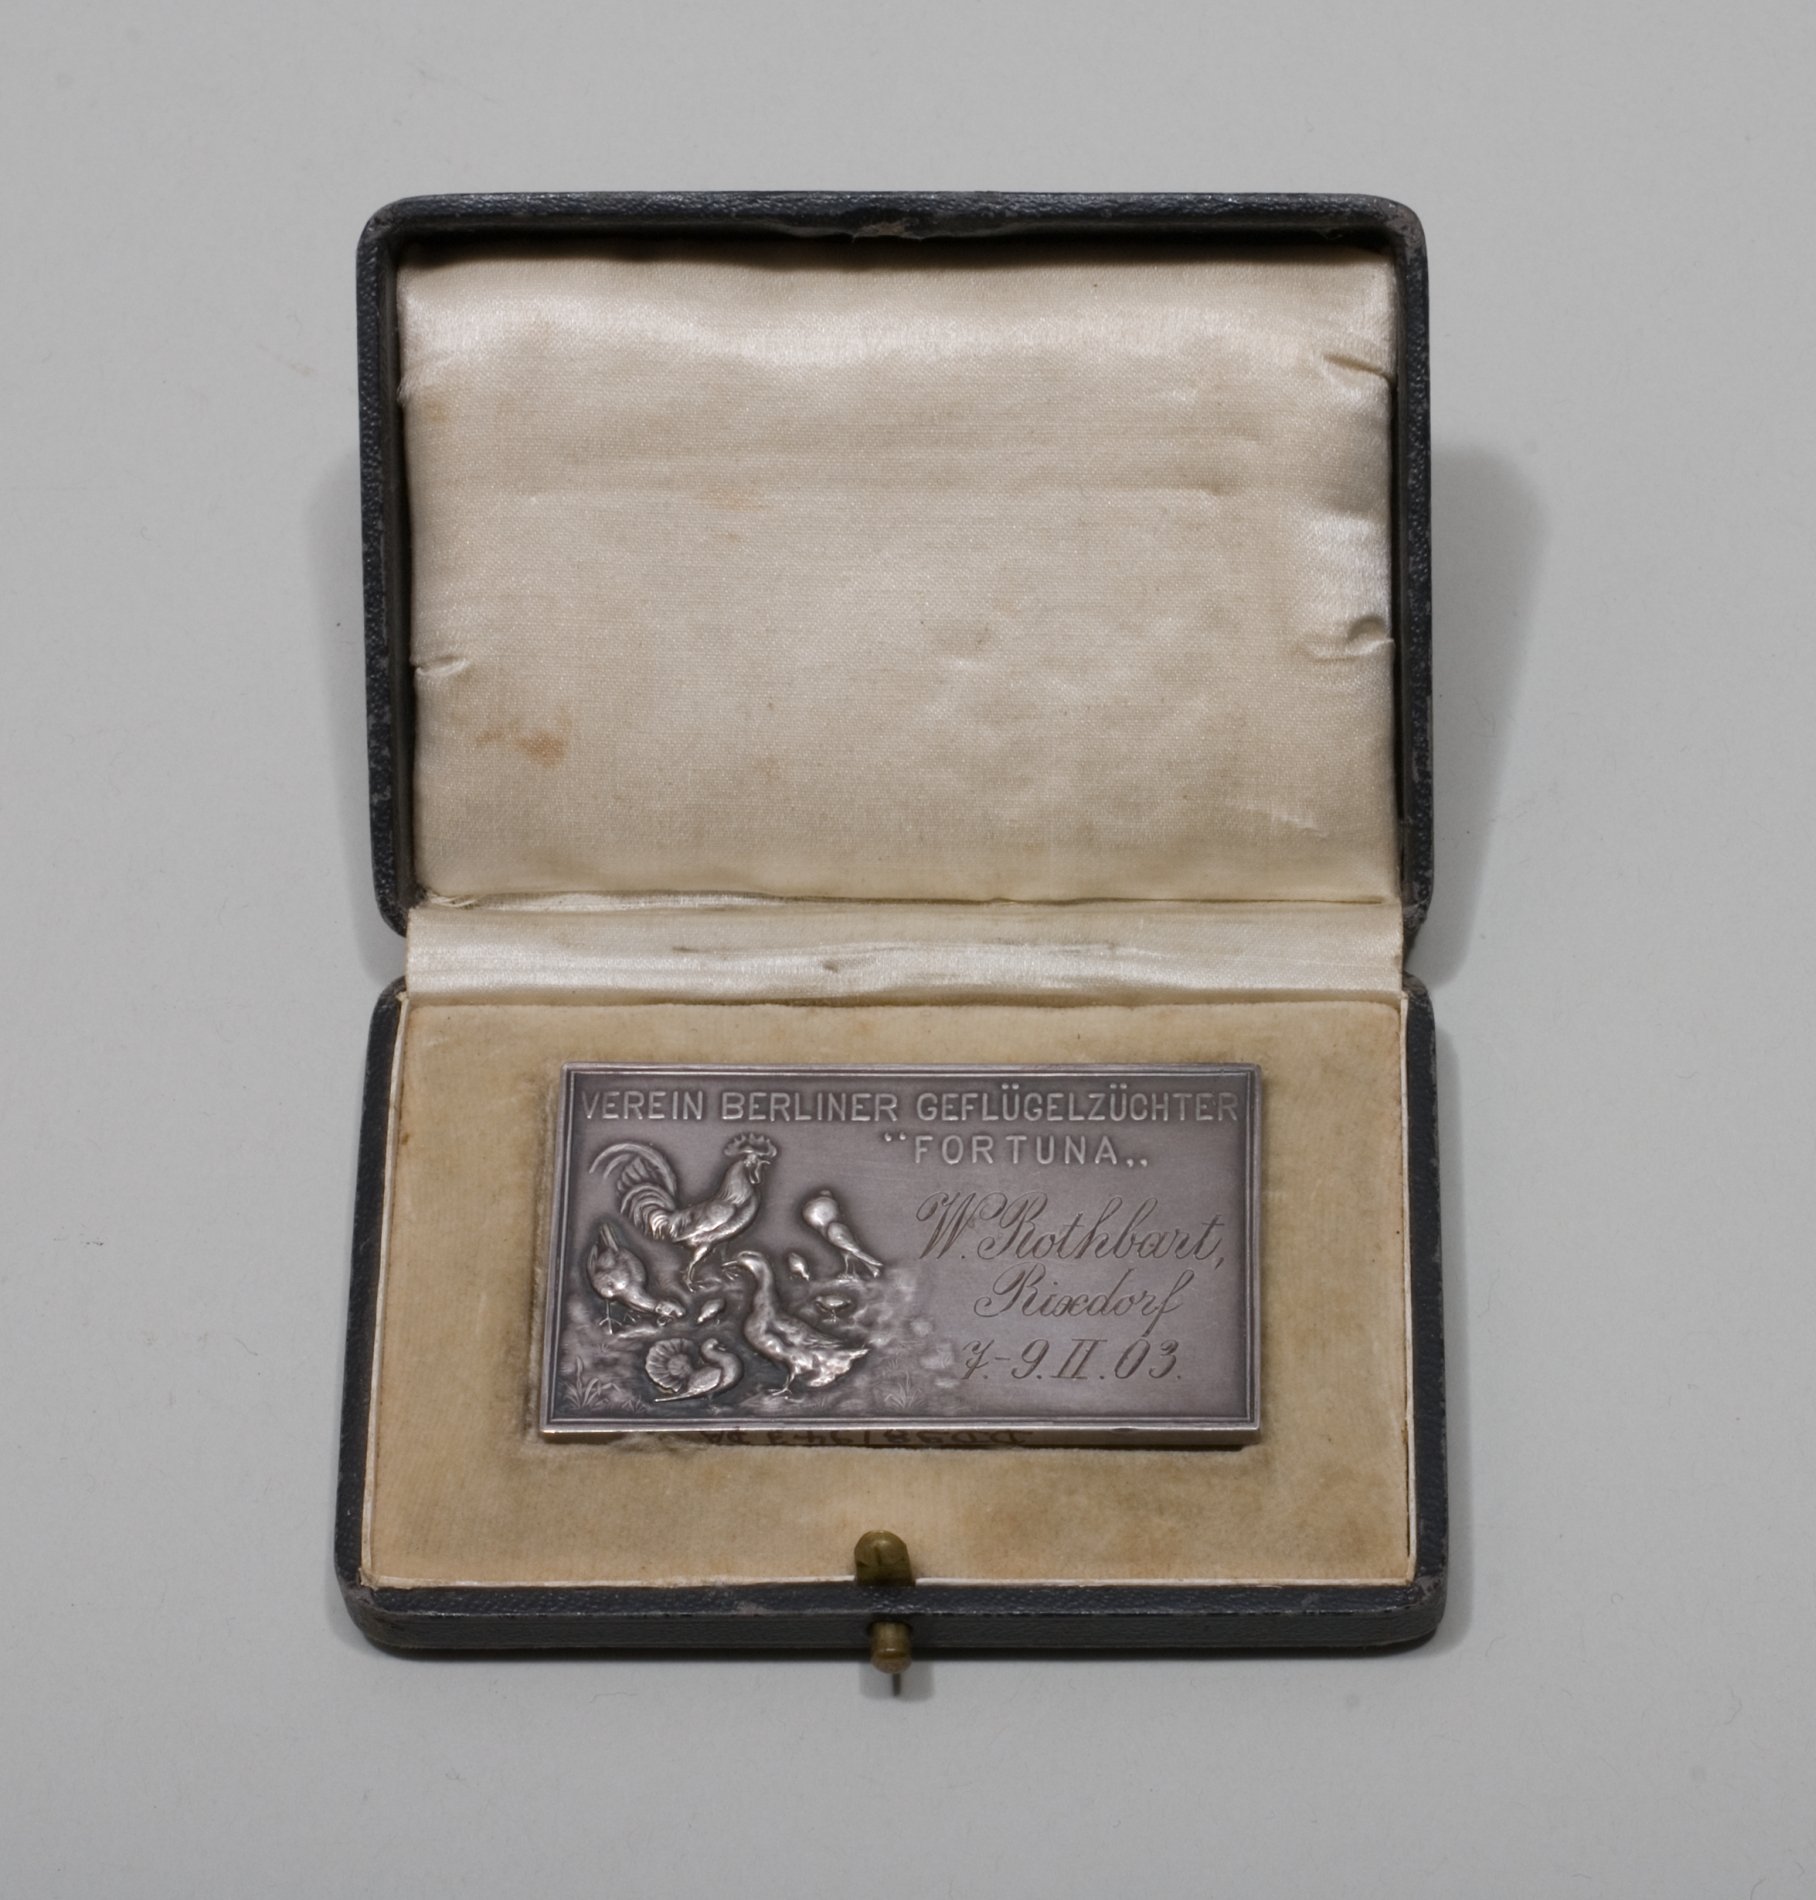 Medaillen "Verein Berliner Geflügelzüchter Fortuna", 1902/1903 (Stiftung Domäne Dahlem - Landgut und Museum, Weiternutzung nur mit Genehmigung des Museums CC BY-NC-SA)